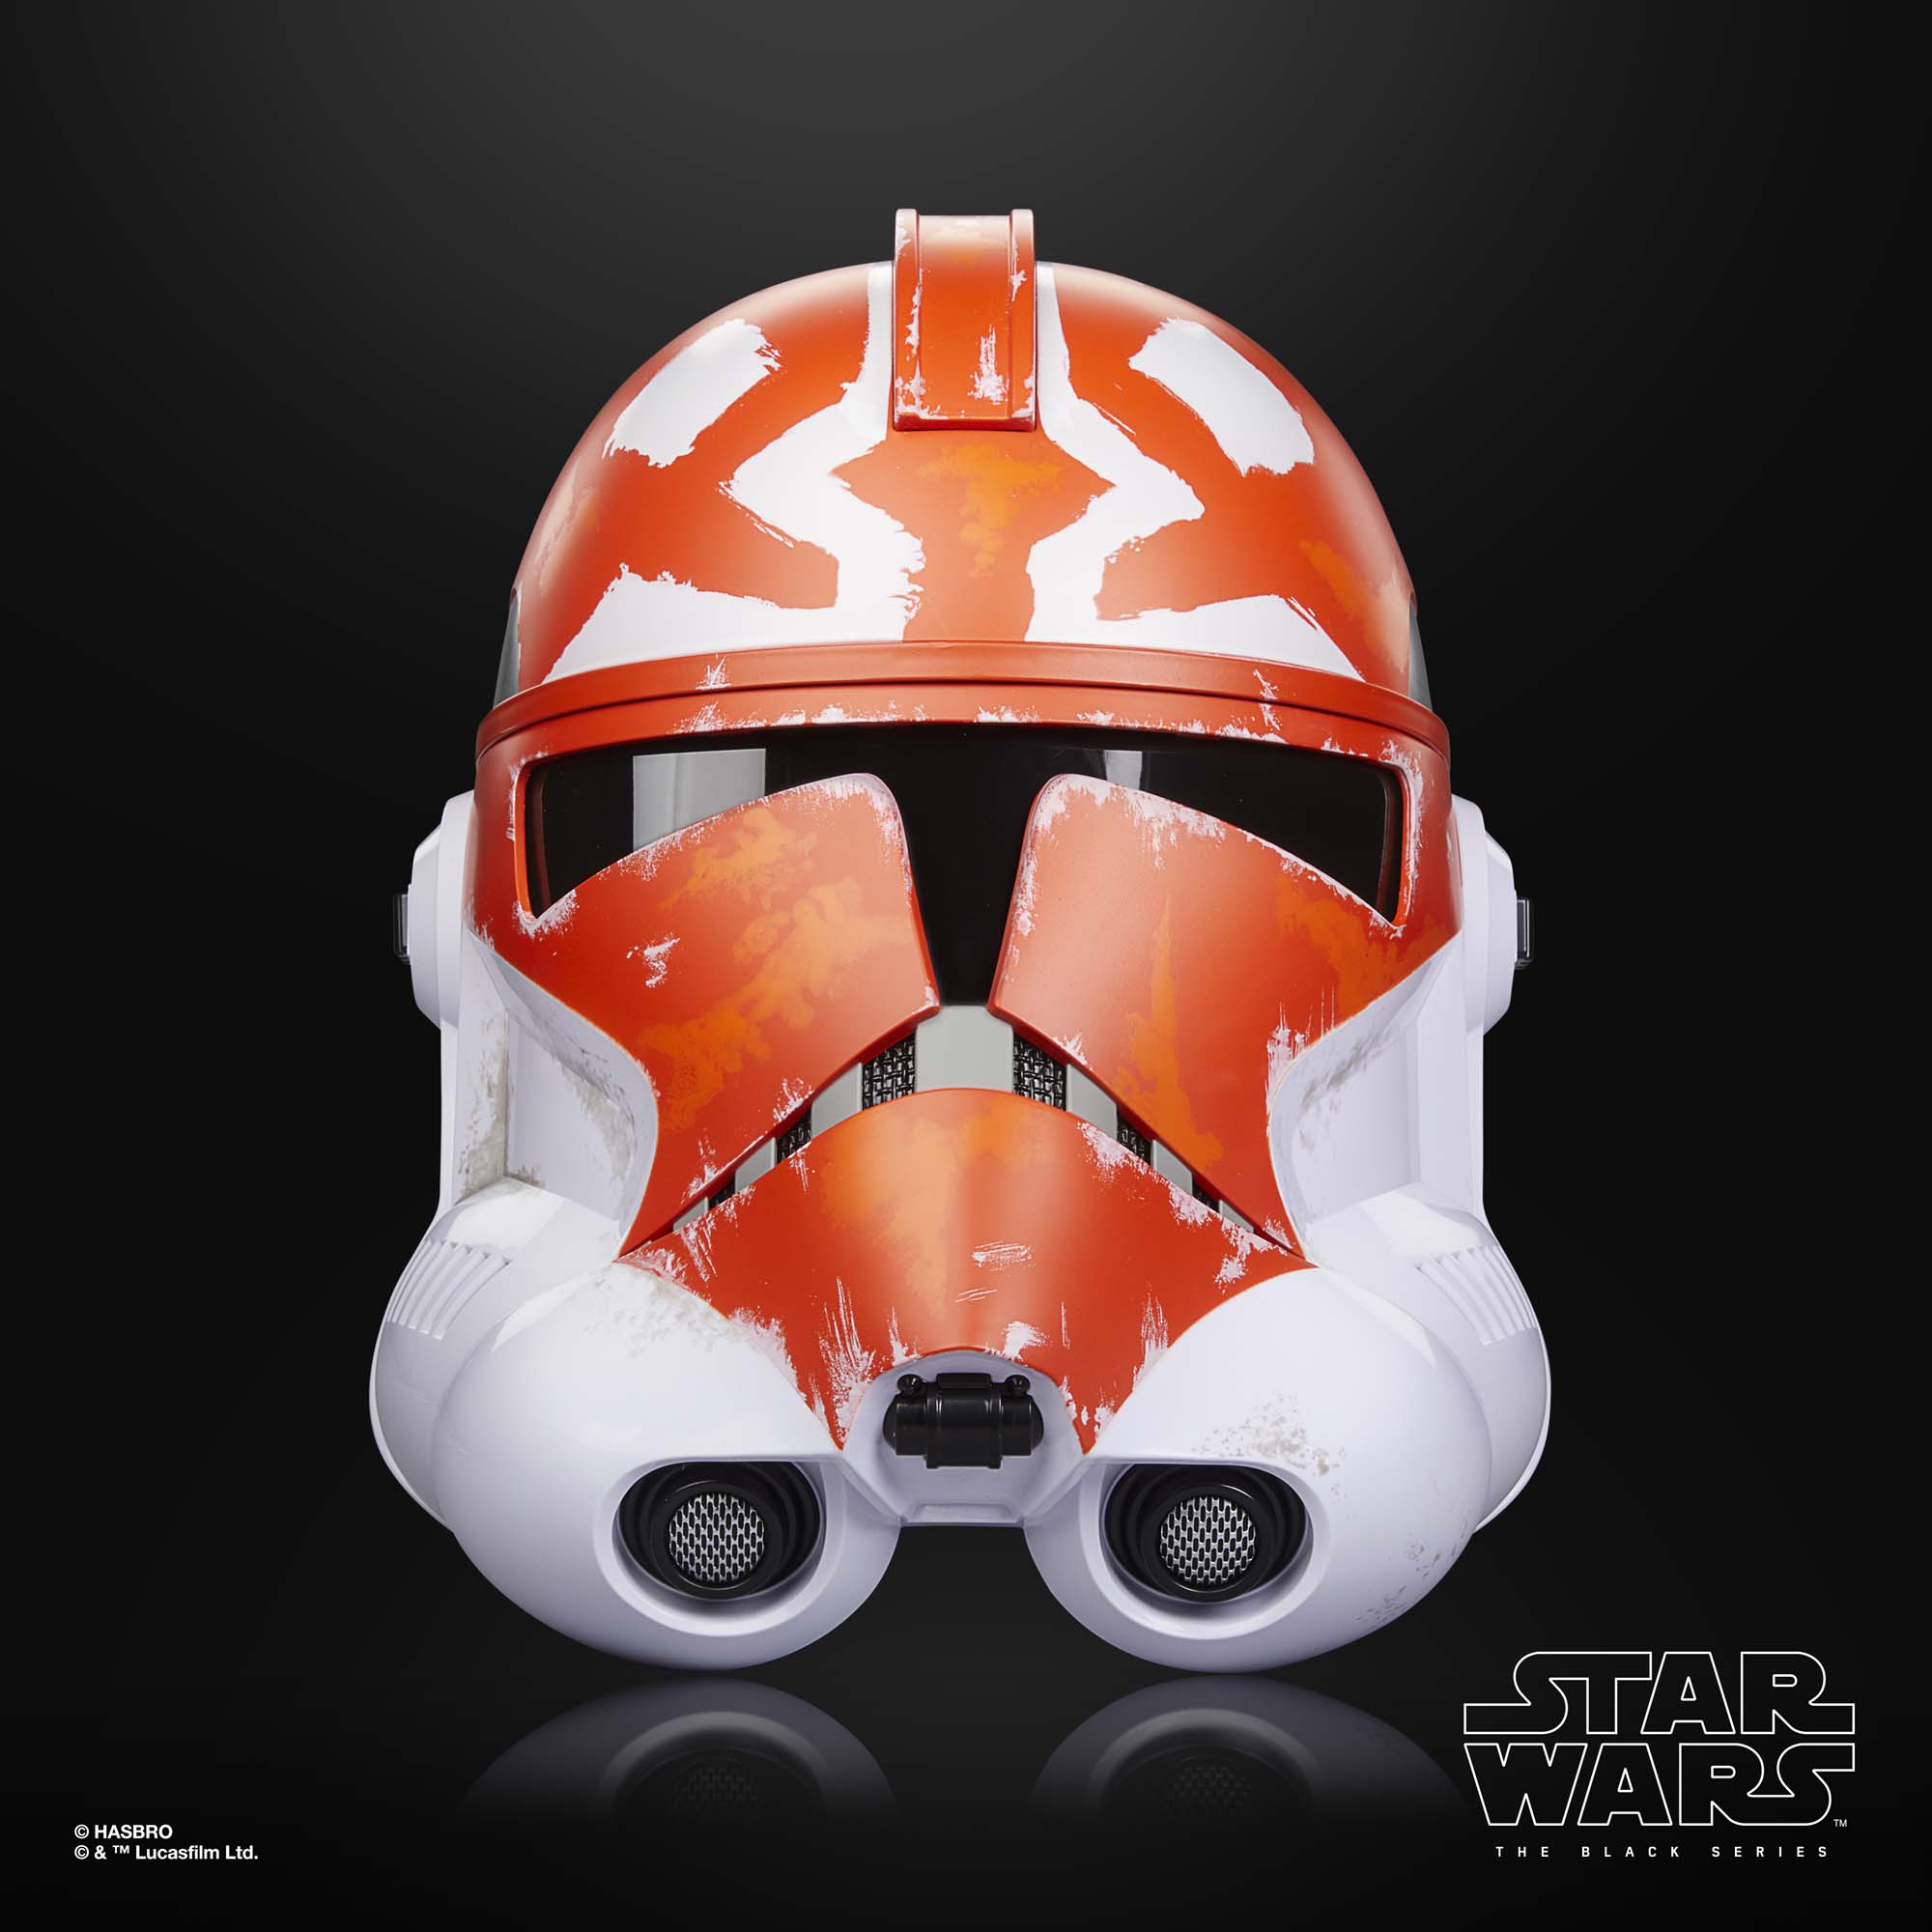 Star Wars The Black Series Ahsoka’s Clone Trooper  Helmet F79435L0 5010996123398